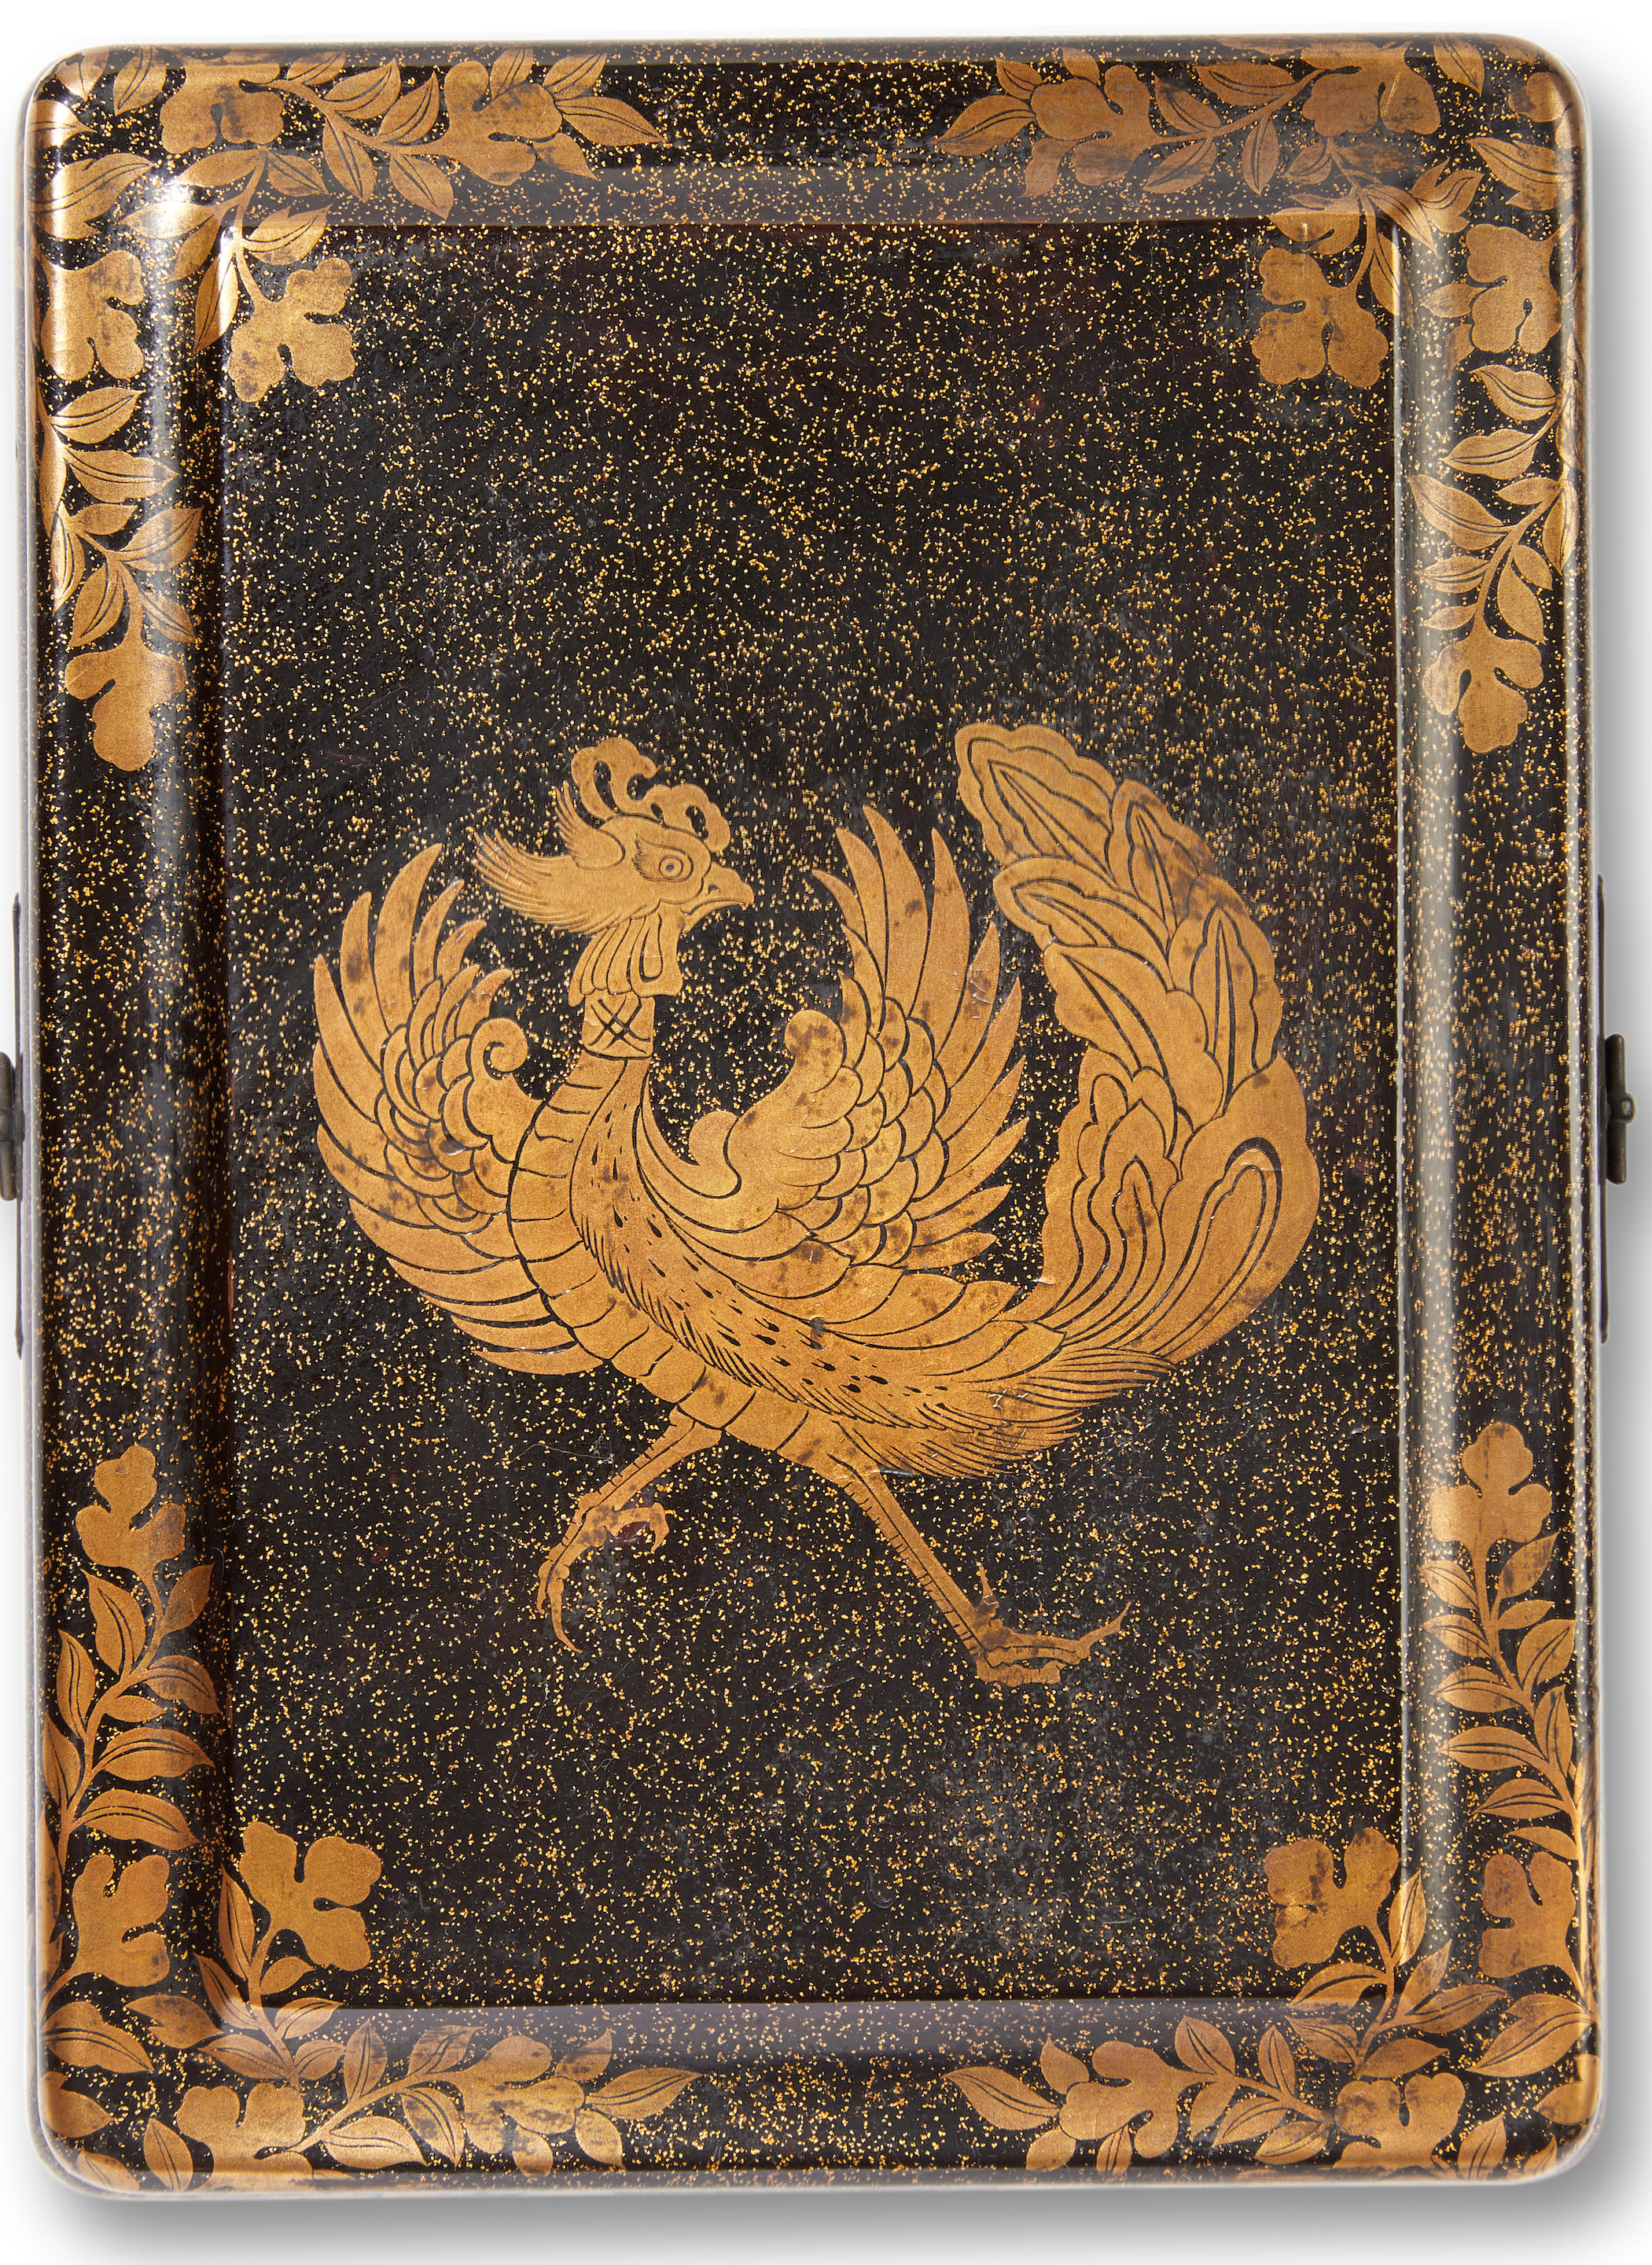 A lacquer box and cover Edo period (1615-1868), 17th century